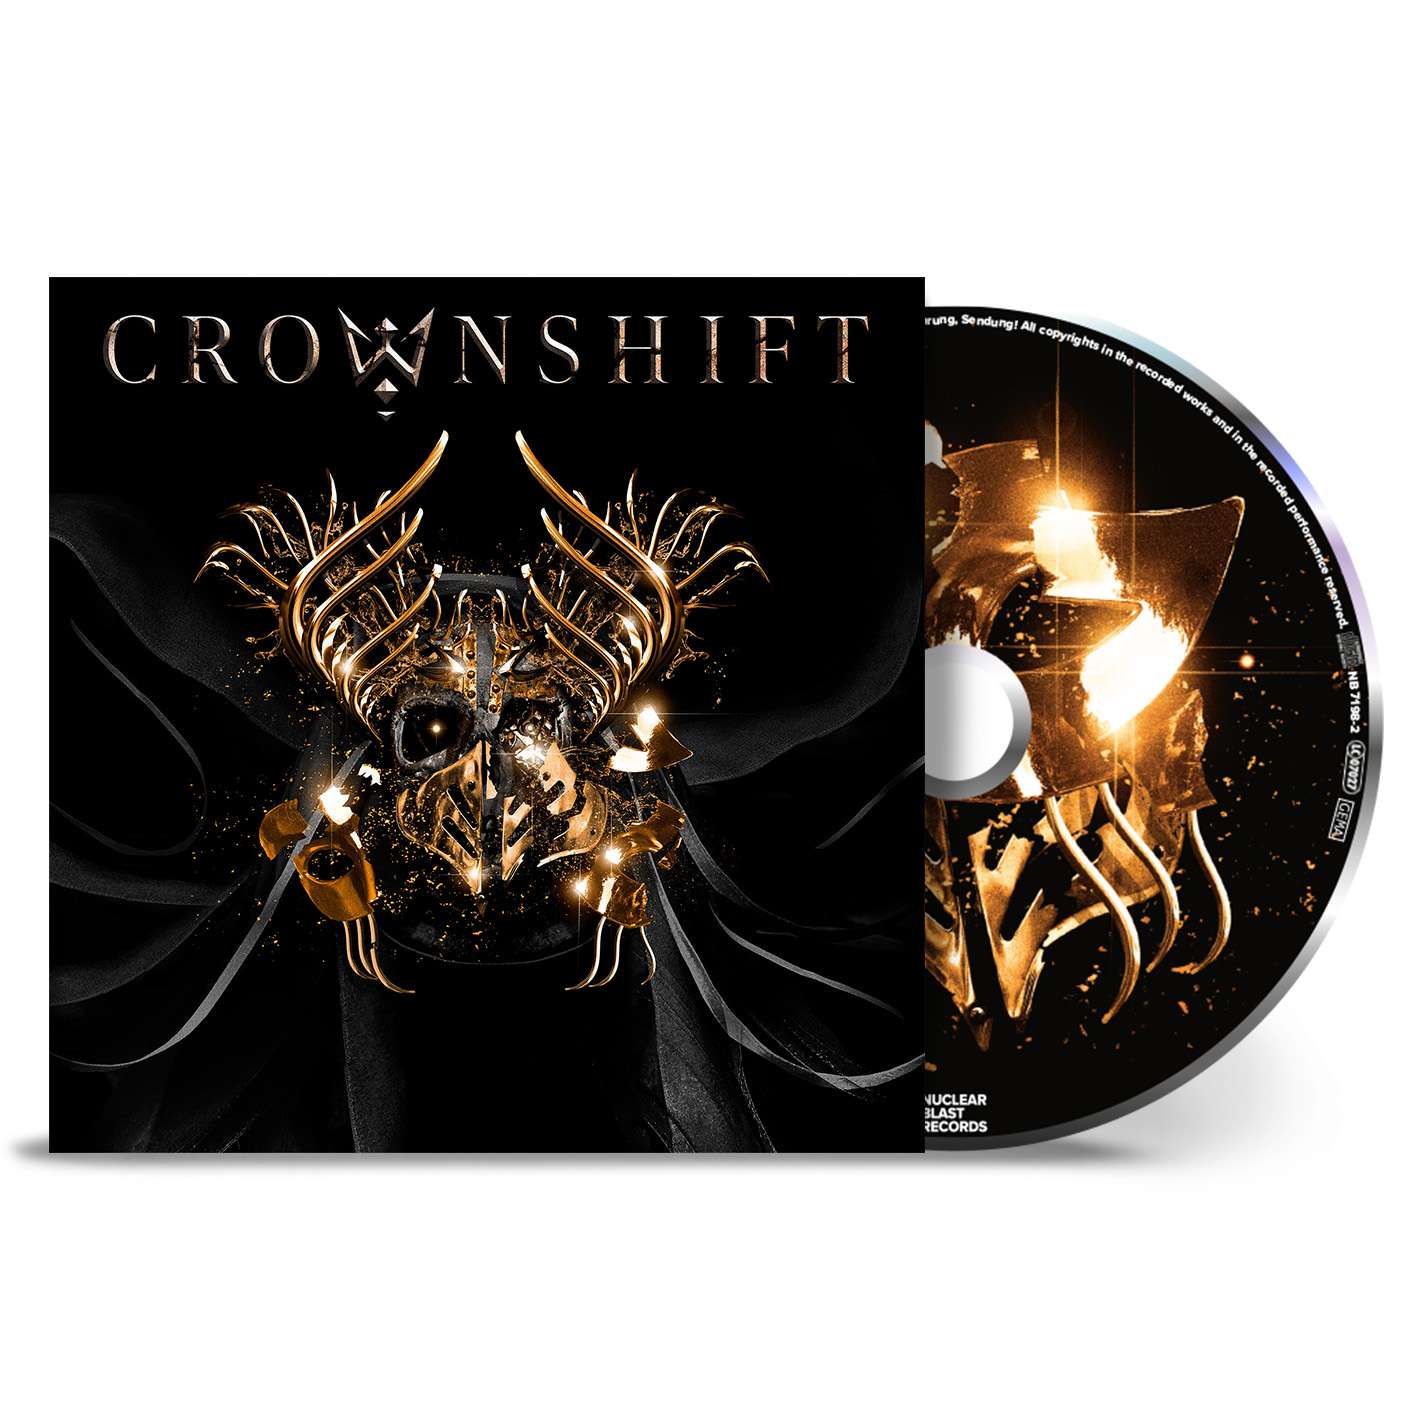 Crownshift "Crownshift" CD - PRE-ORDER